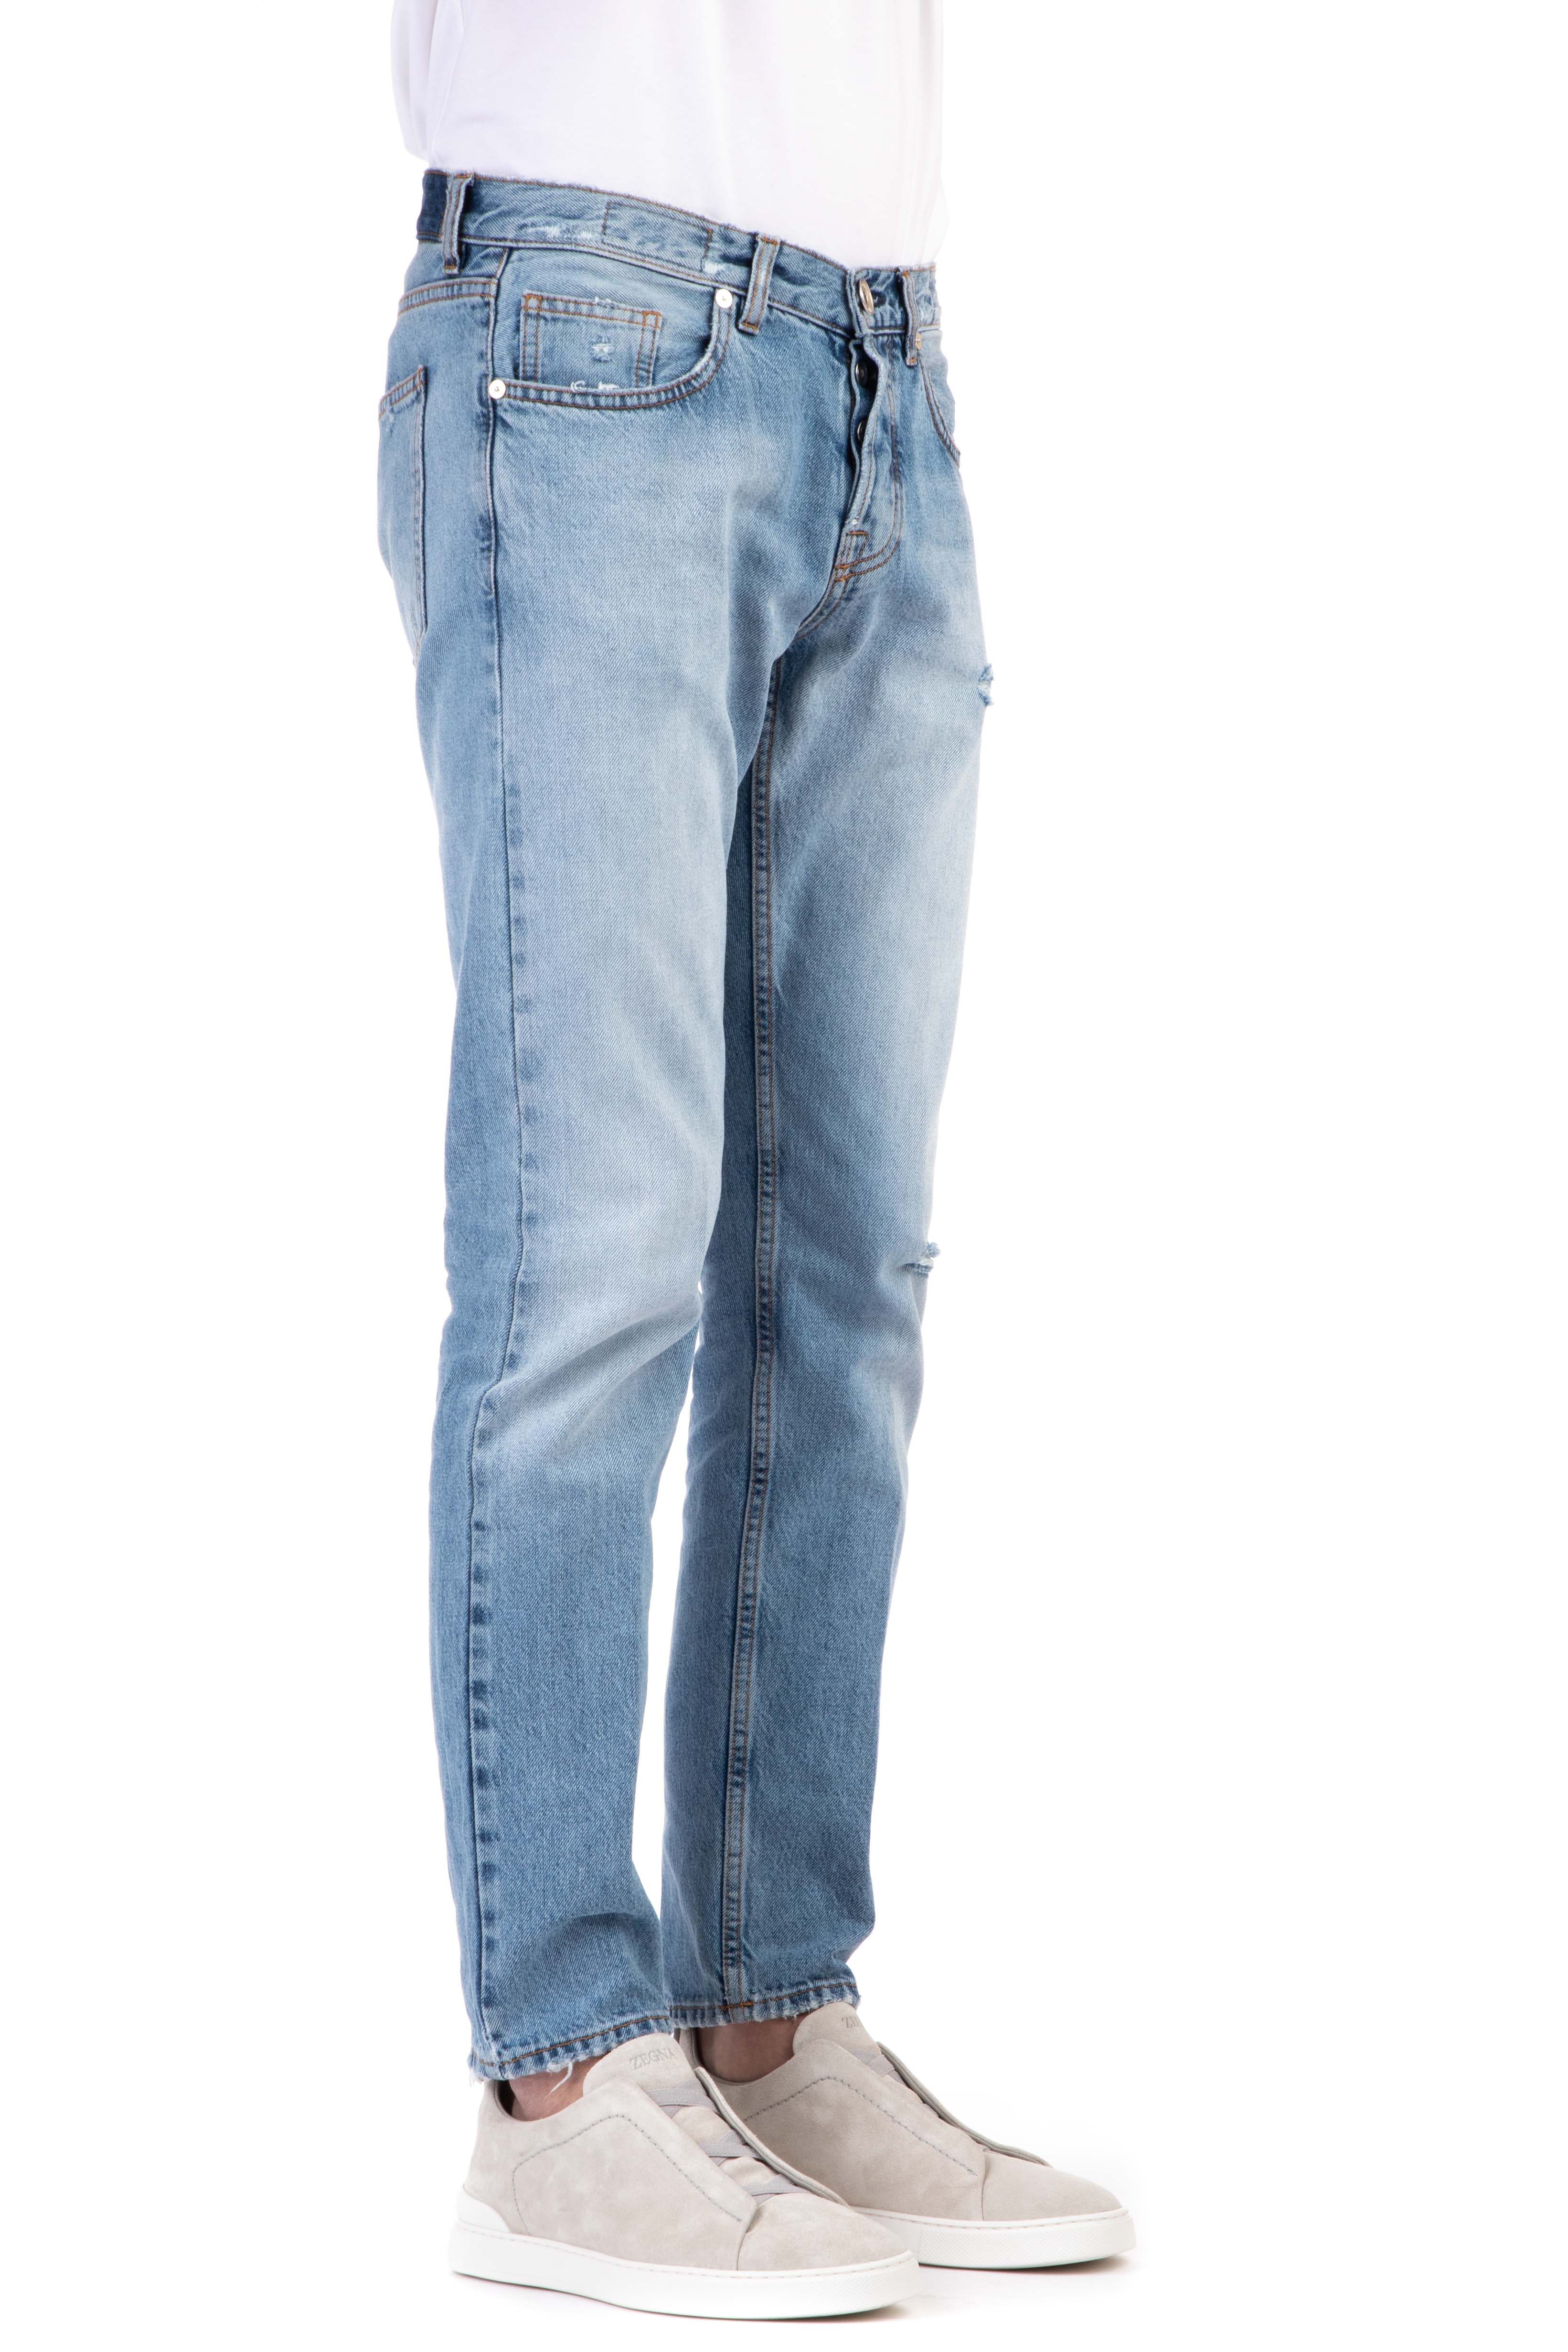 Pure cotton denim jeans